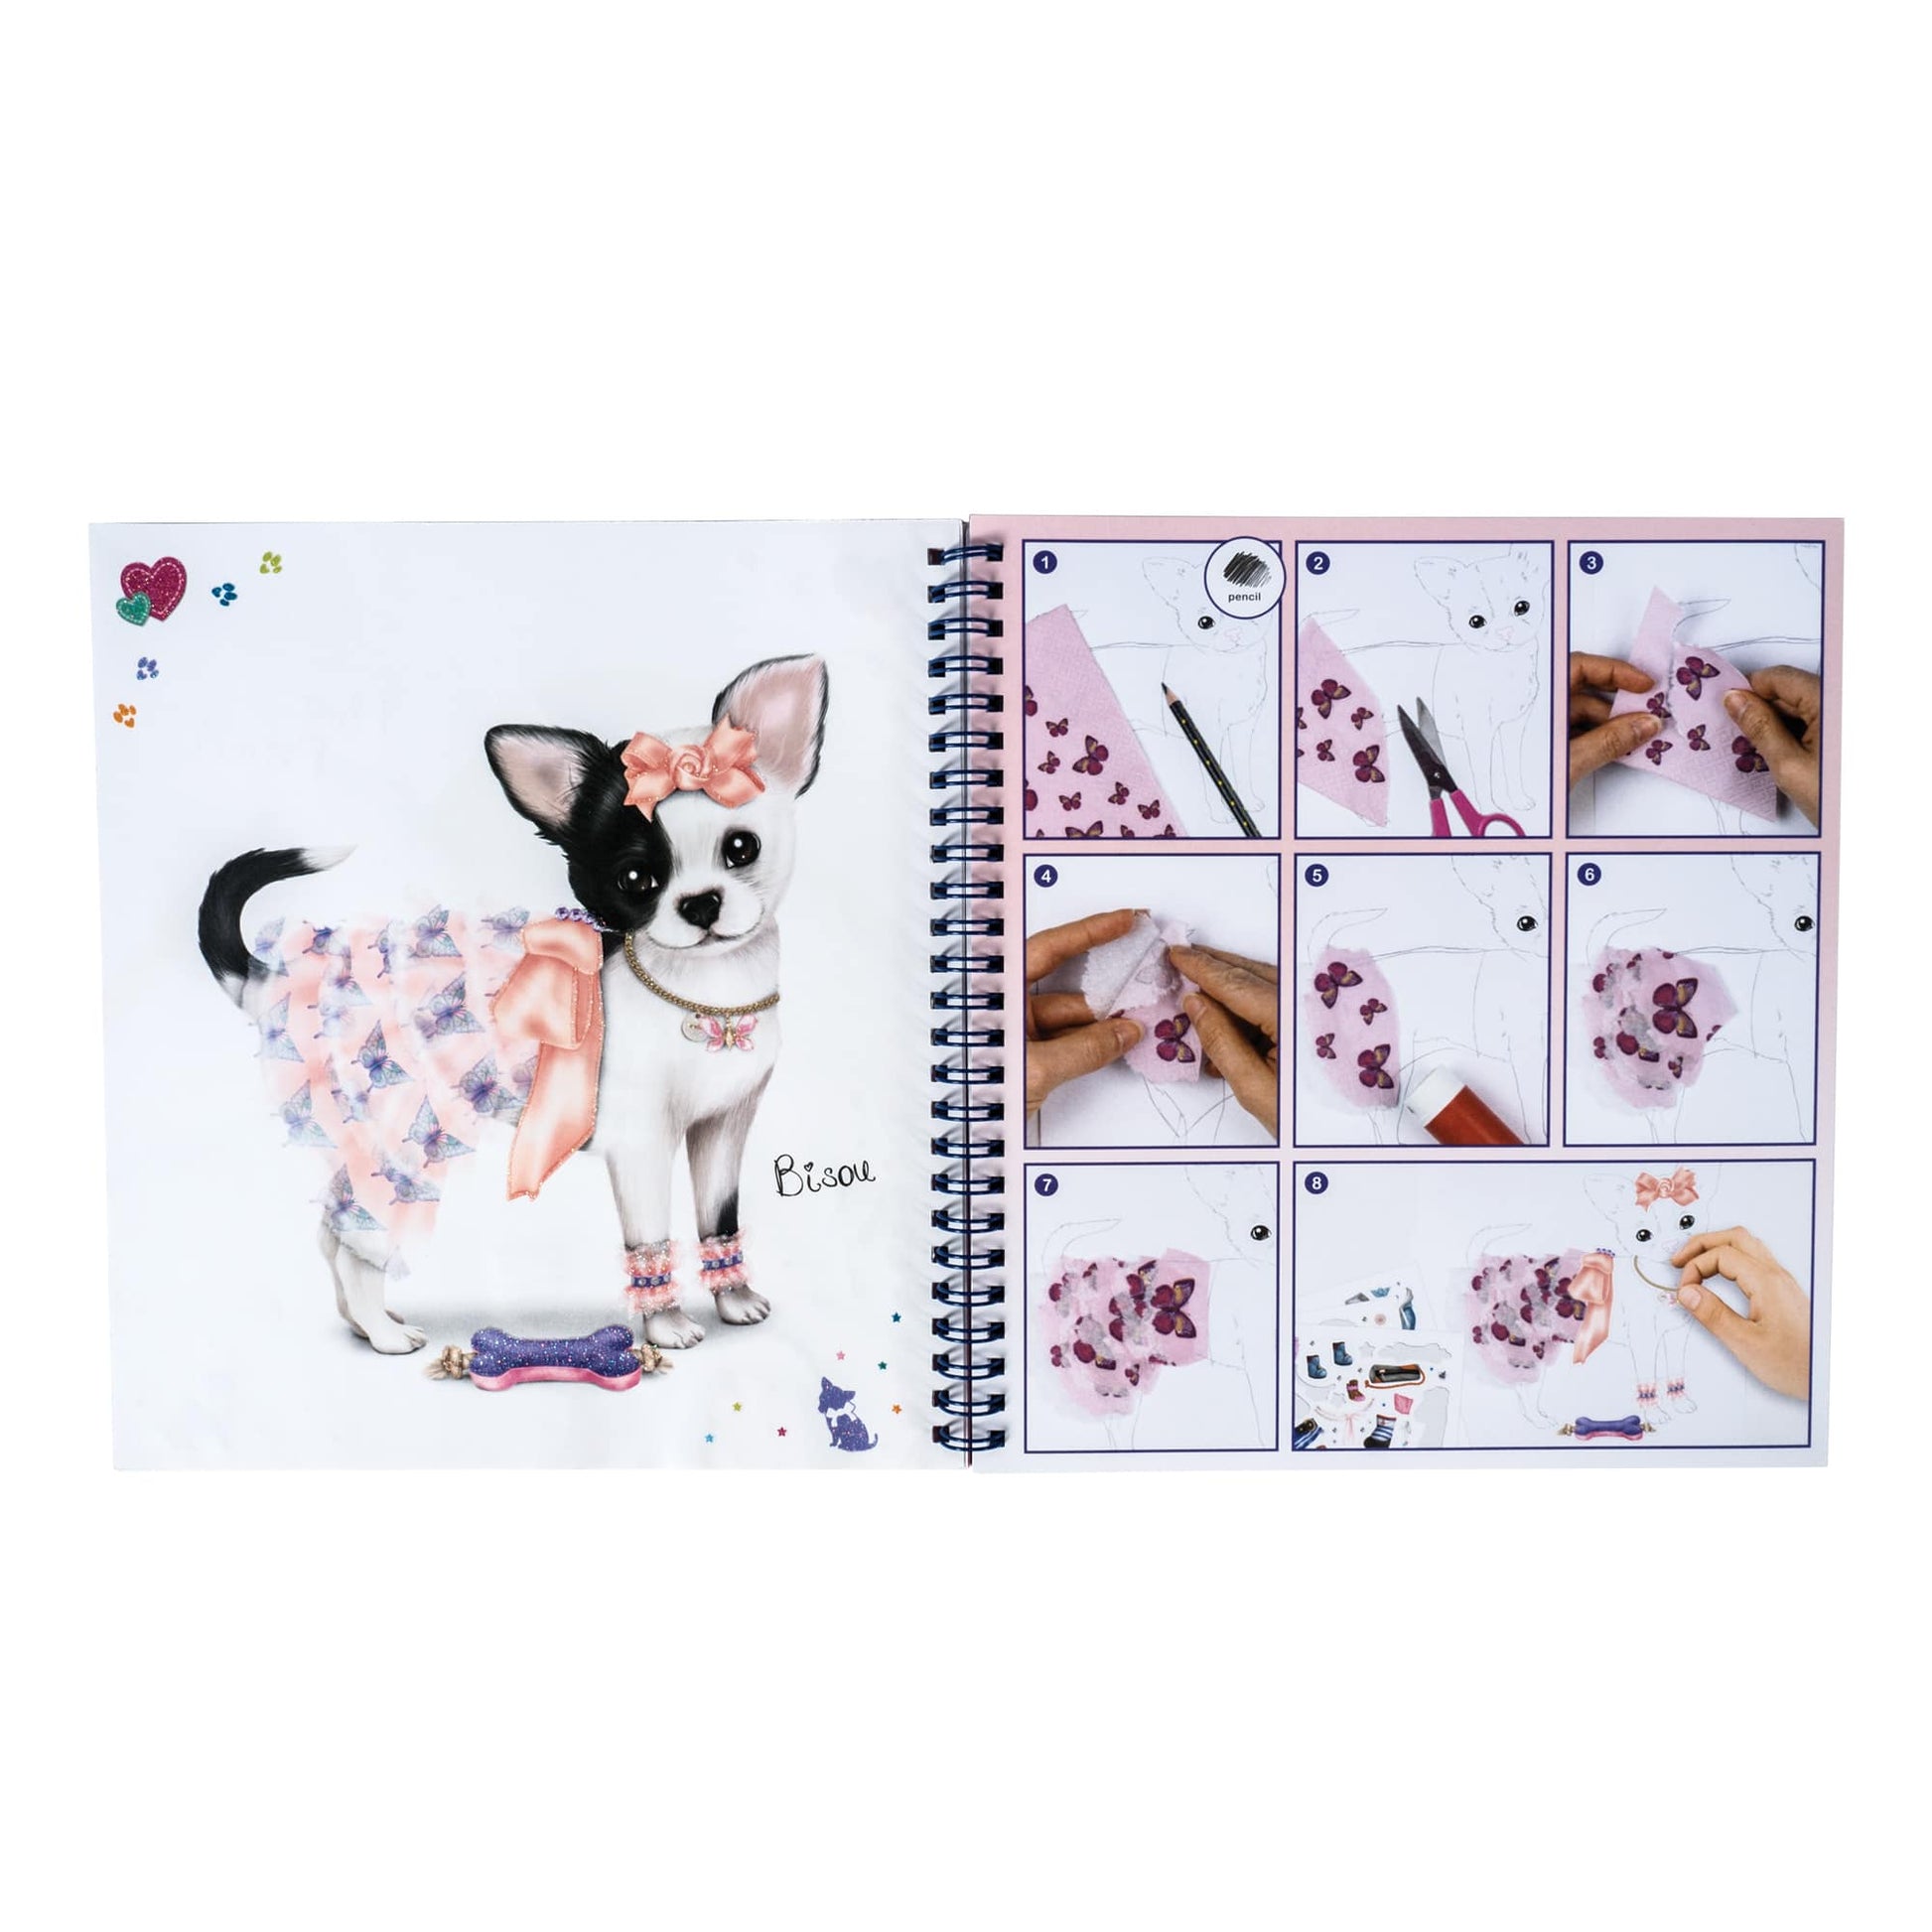 Style Model Doggy Fashion Design Kit